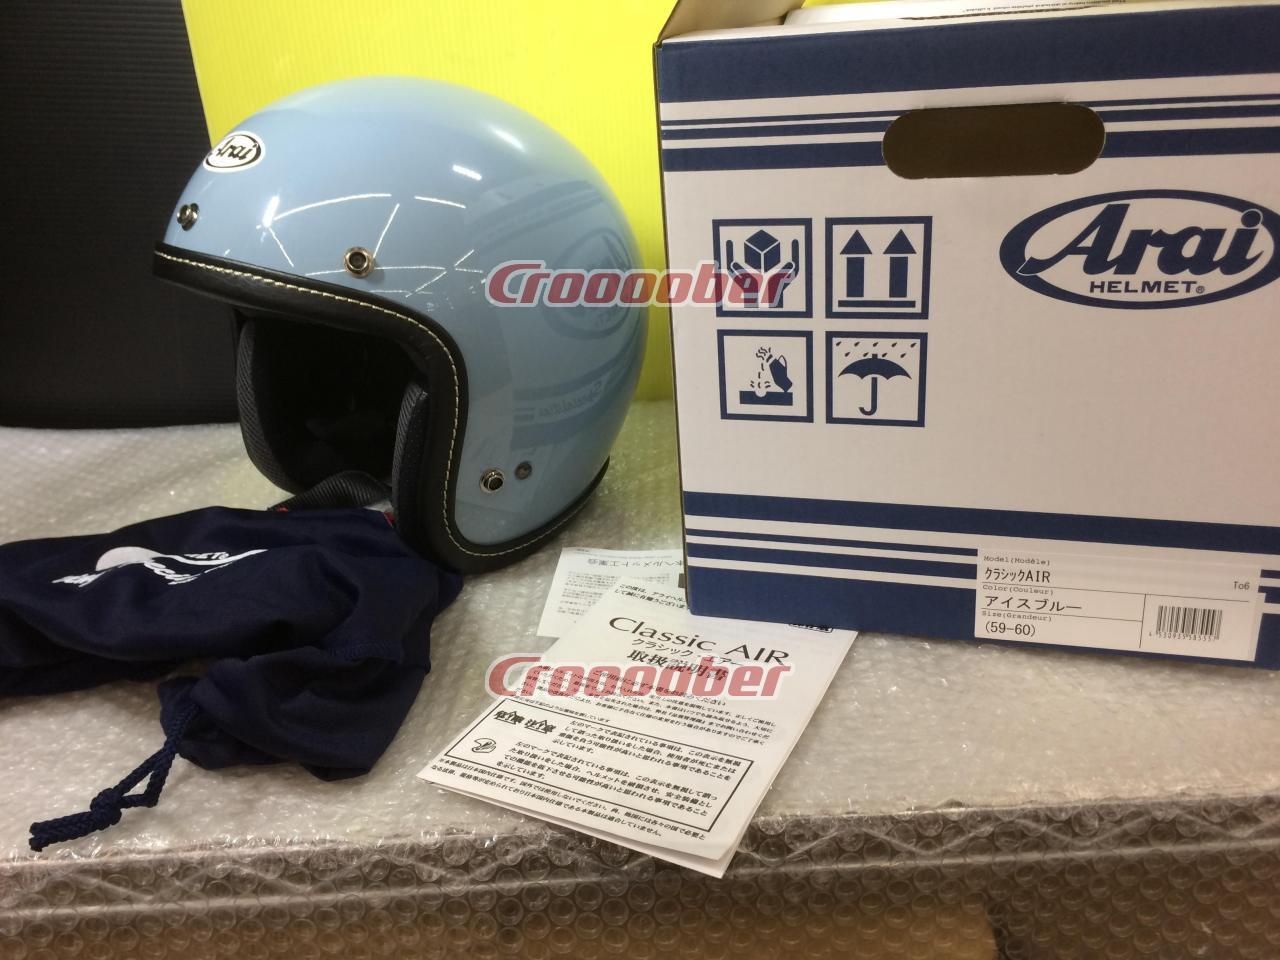 Arai Classic AIR アイスブルー | ヘルメット ジェットヘルメット(二輪)パーツの通販なら | Croooober(クルーバー)